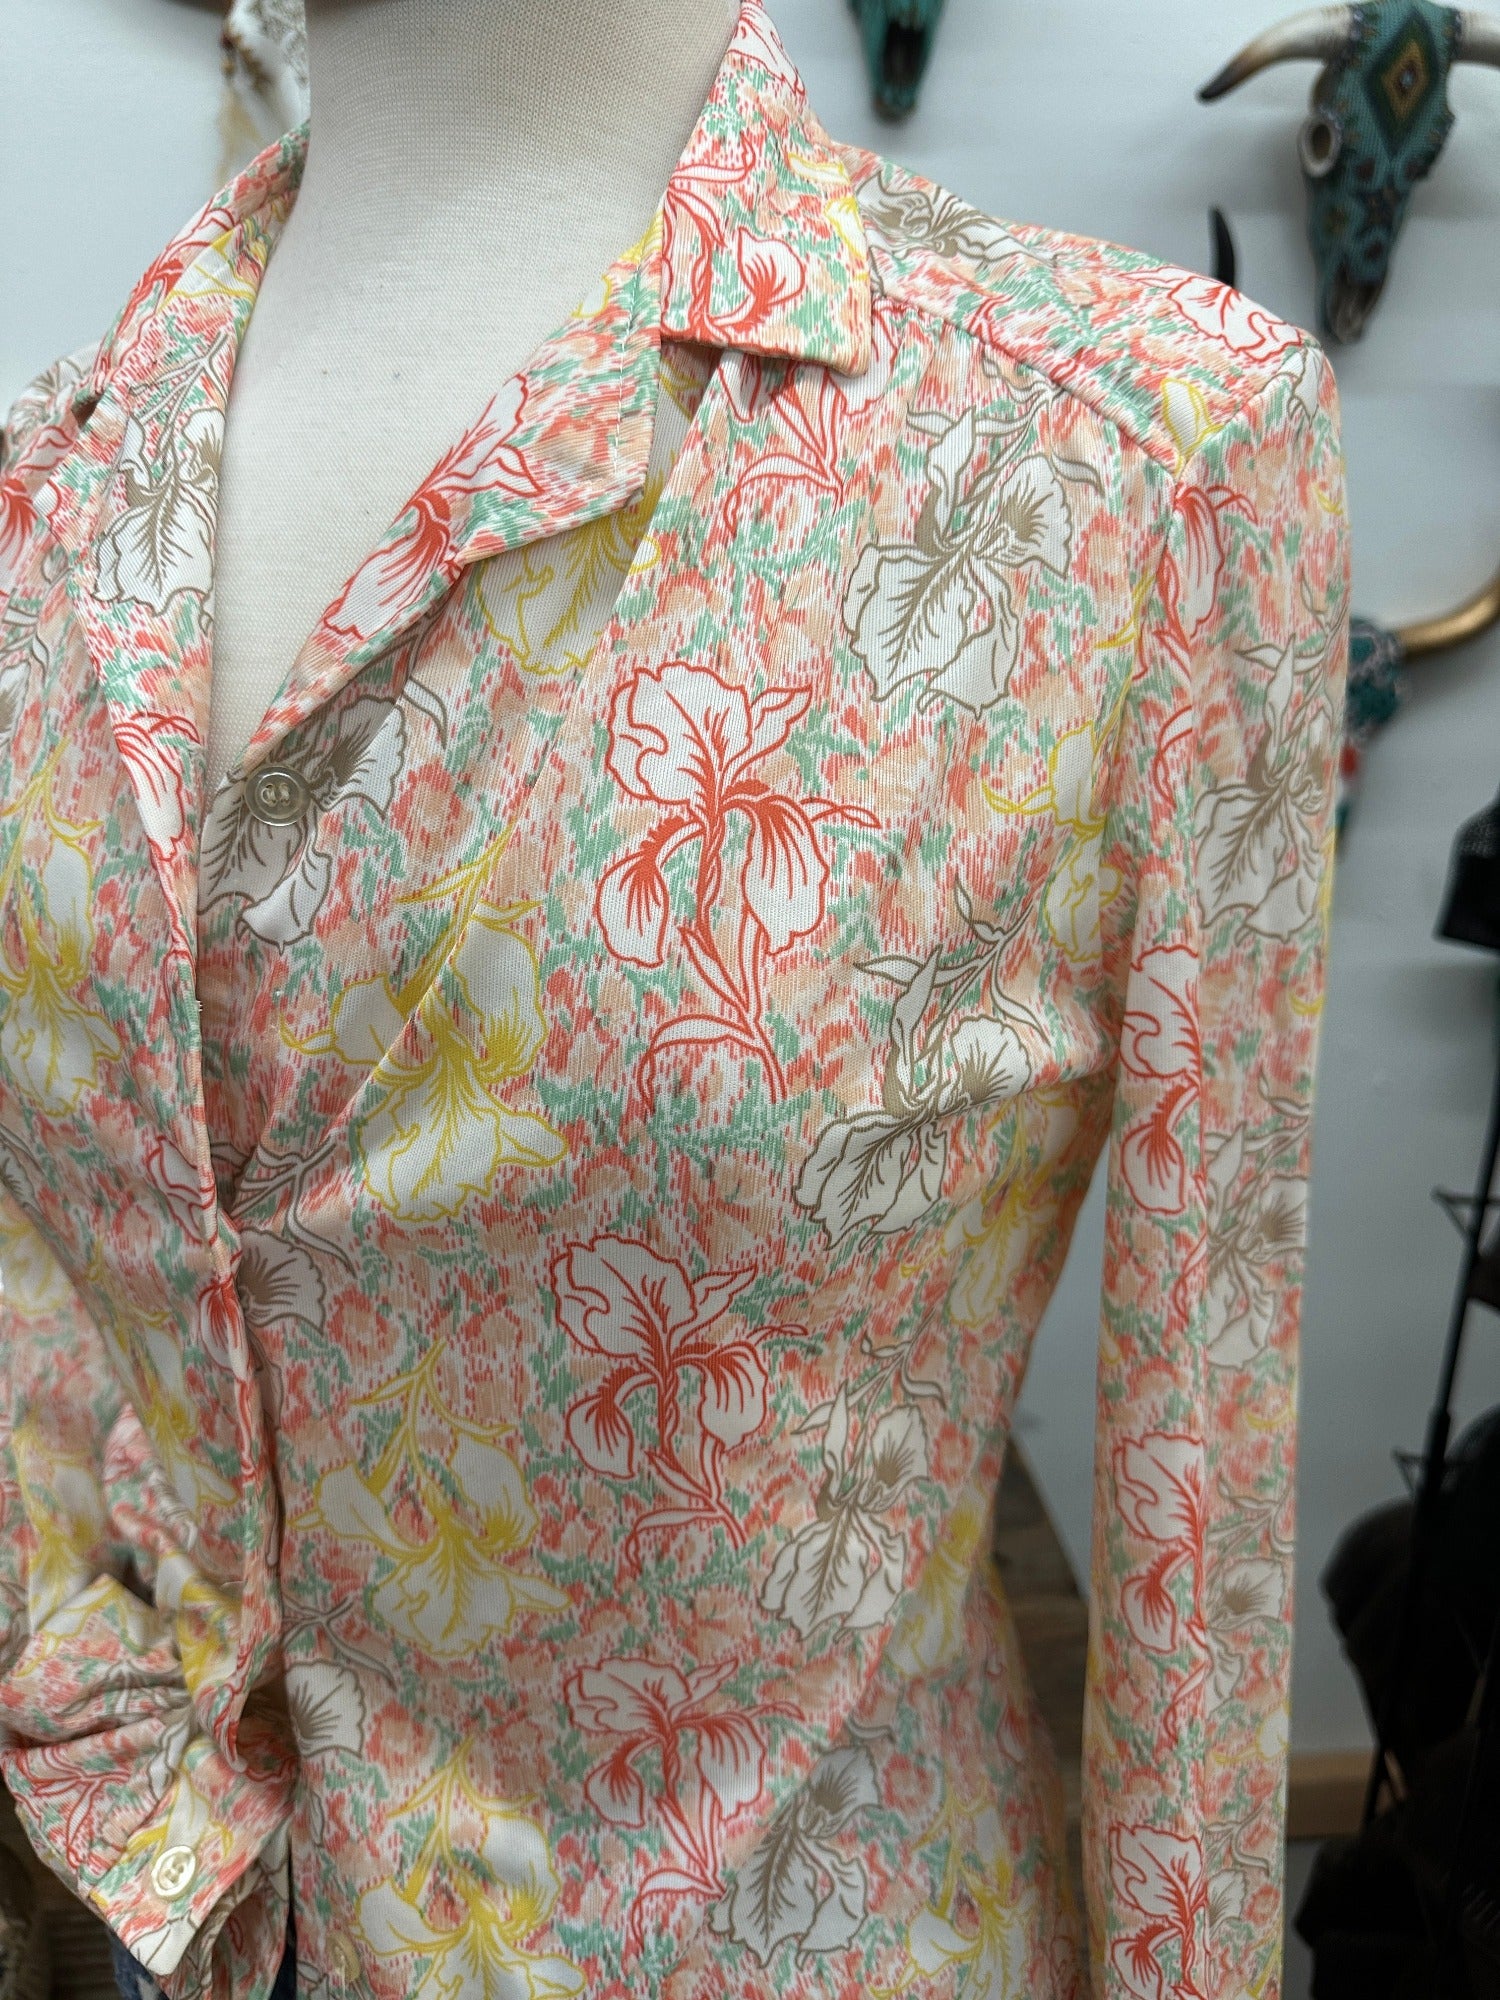 Devon Retro Hawaiian Floral Striped Vintage Button Up Blouse - Size S/M - 2/4/6